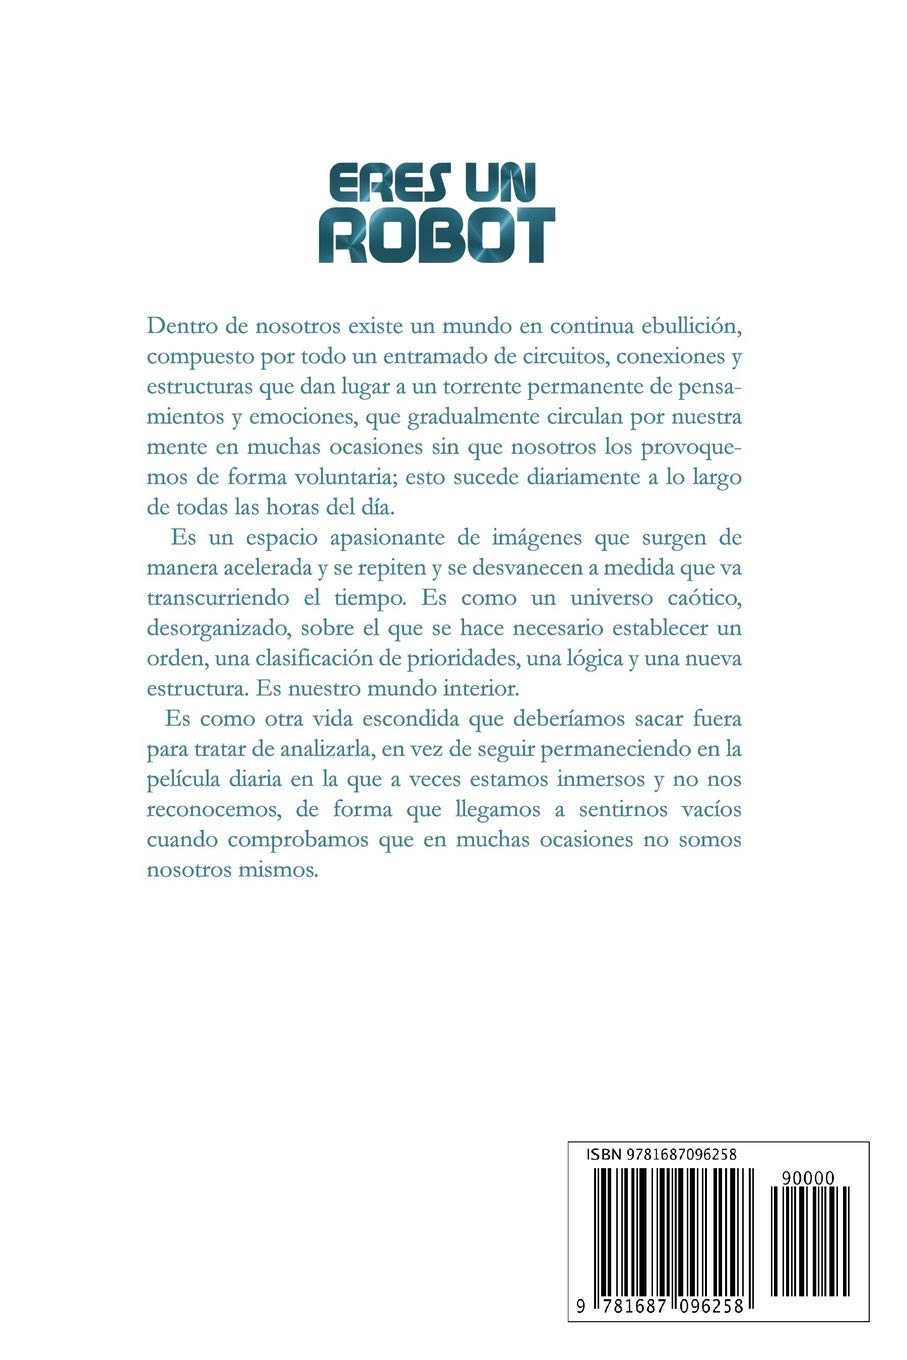 Eres un robot: Guía de autoayuda y desarrollo personal (Spanish Edition)